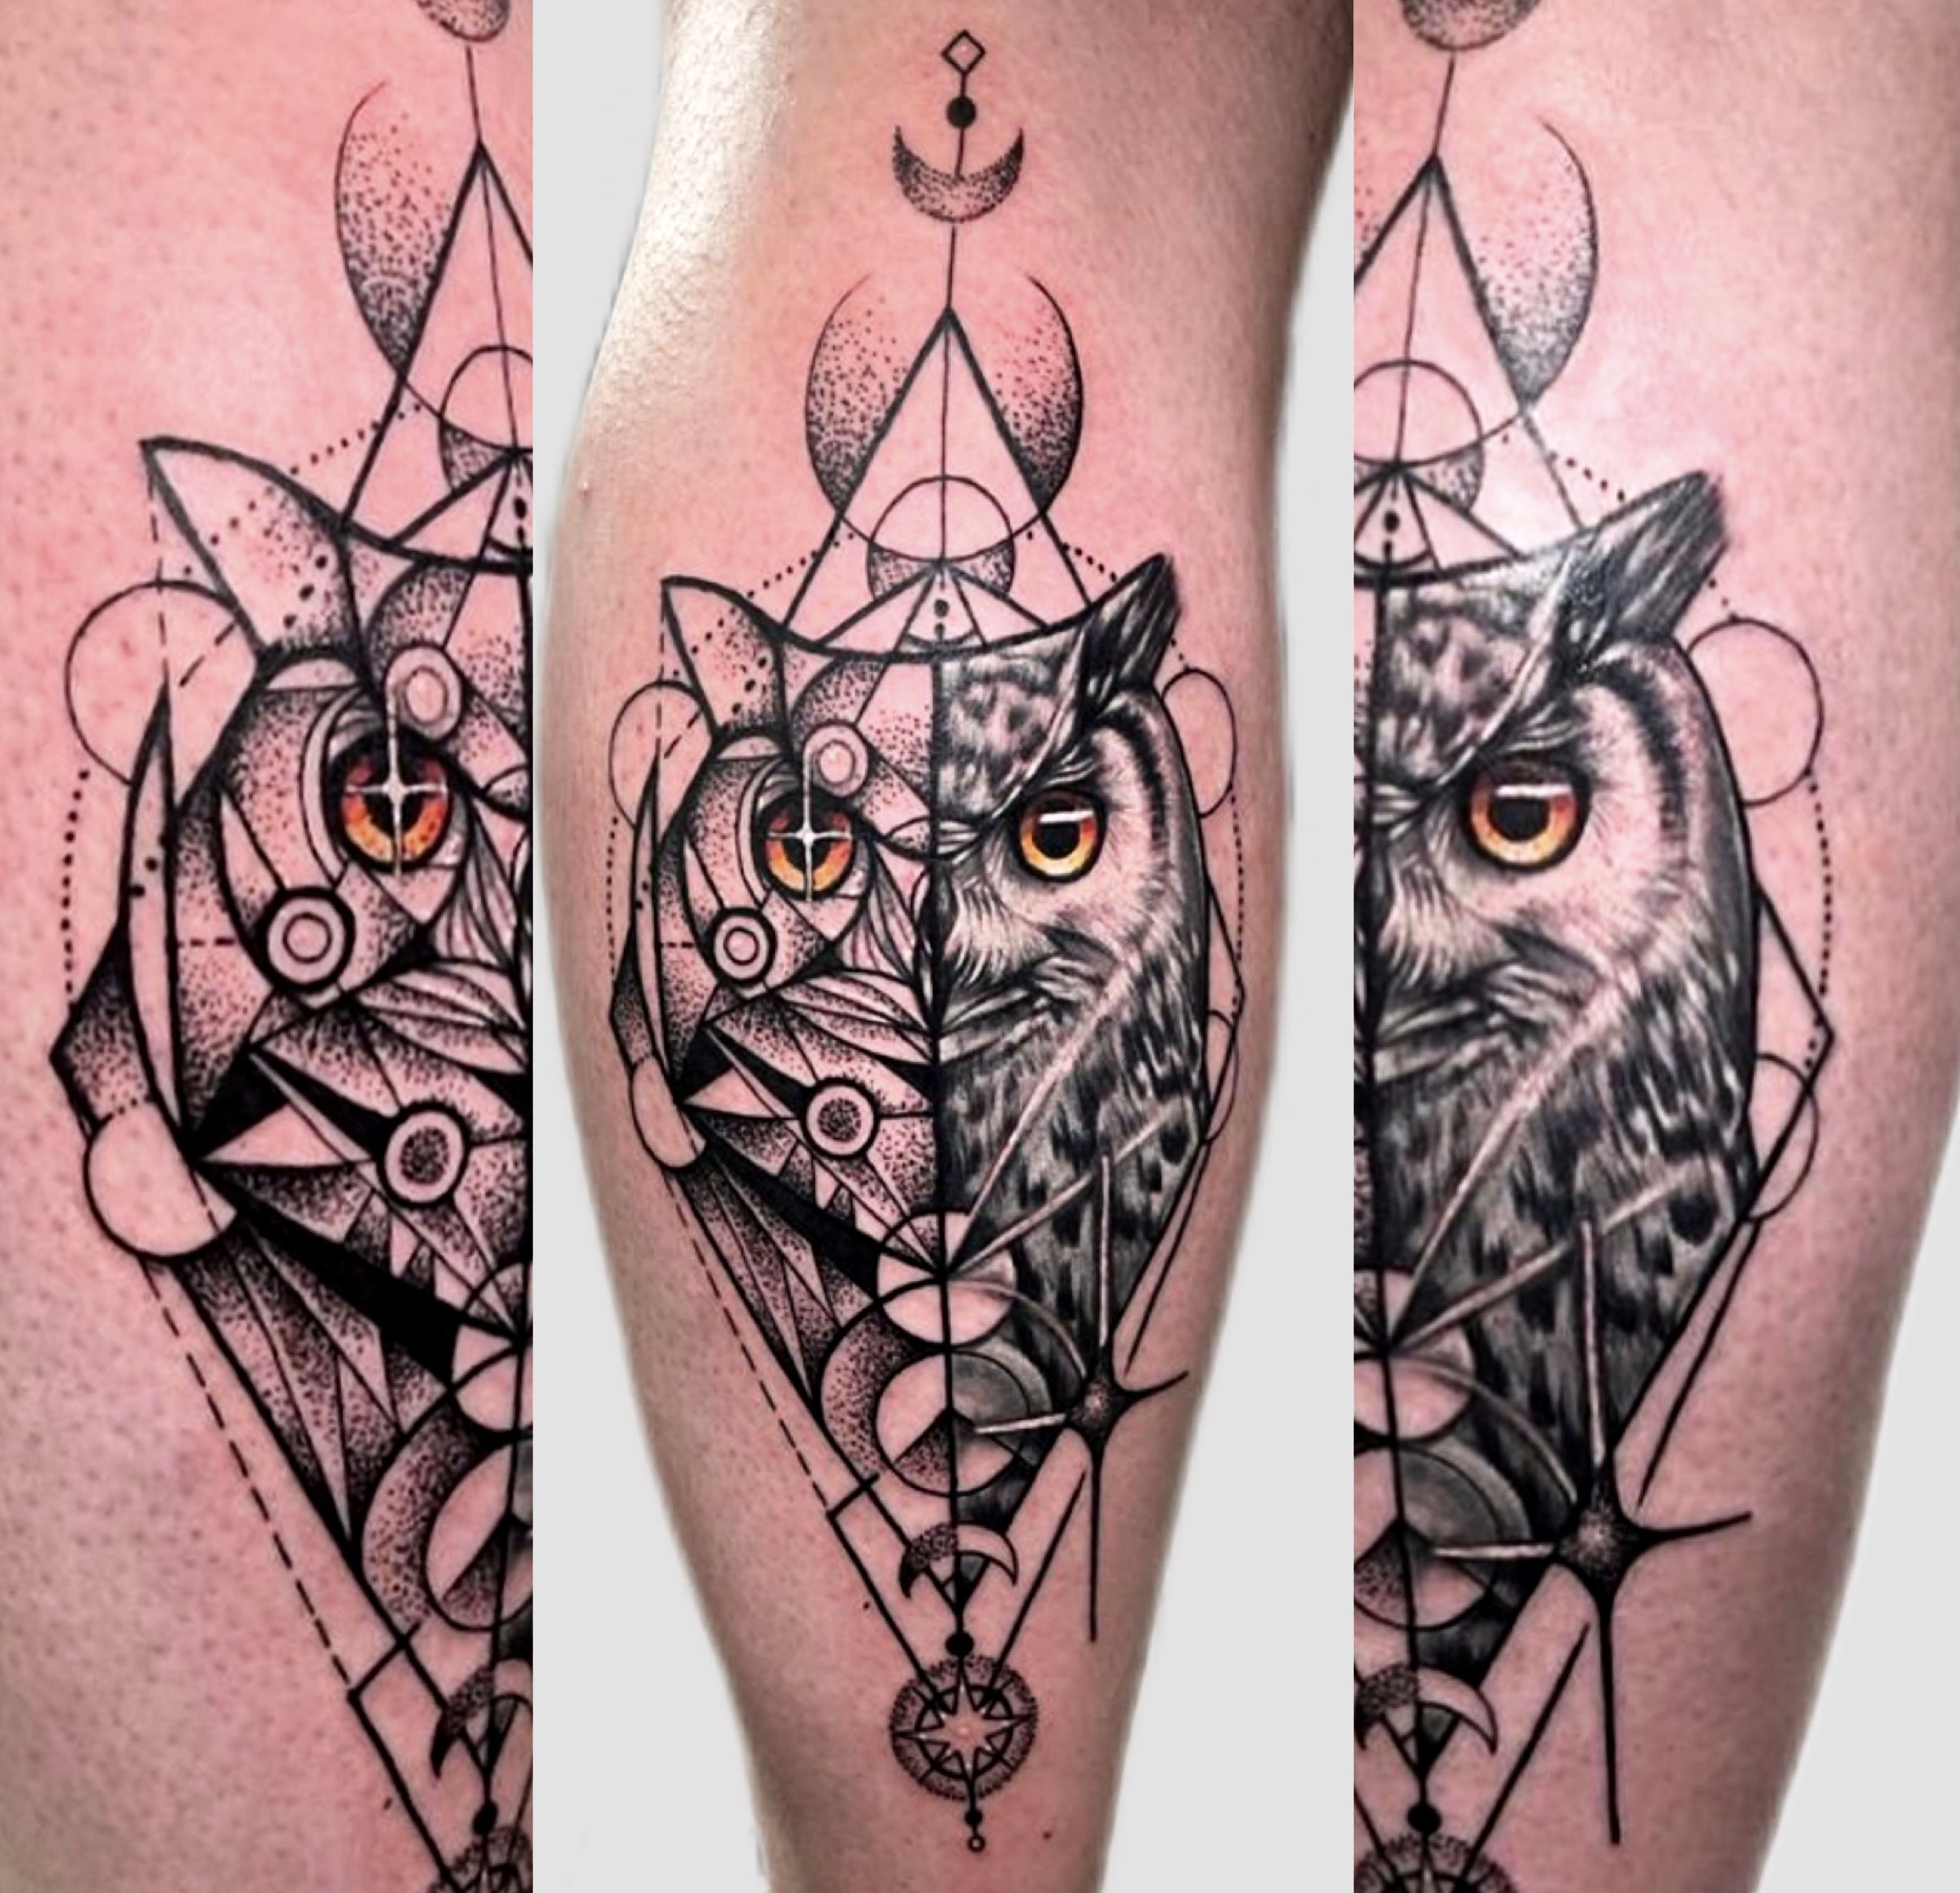 Owl mandala in pen and ink dotwork